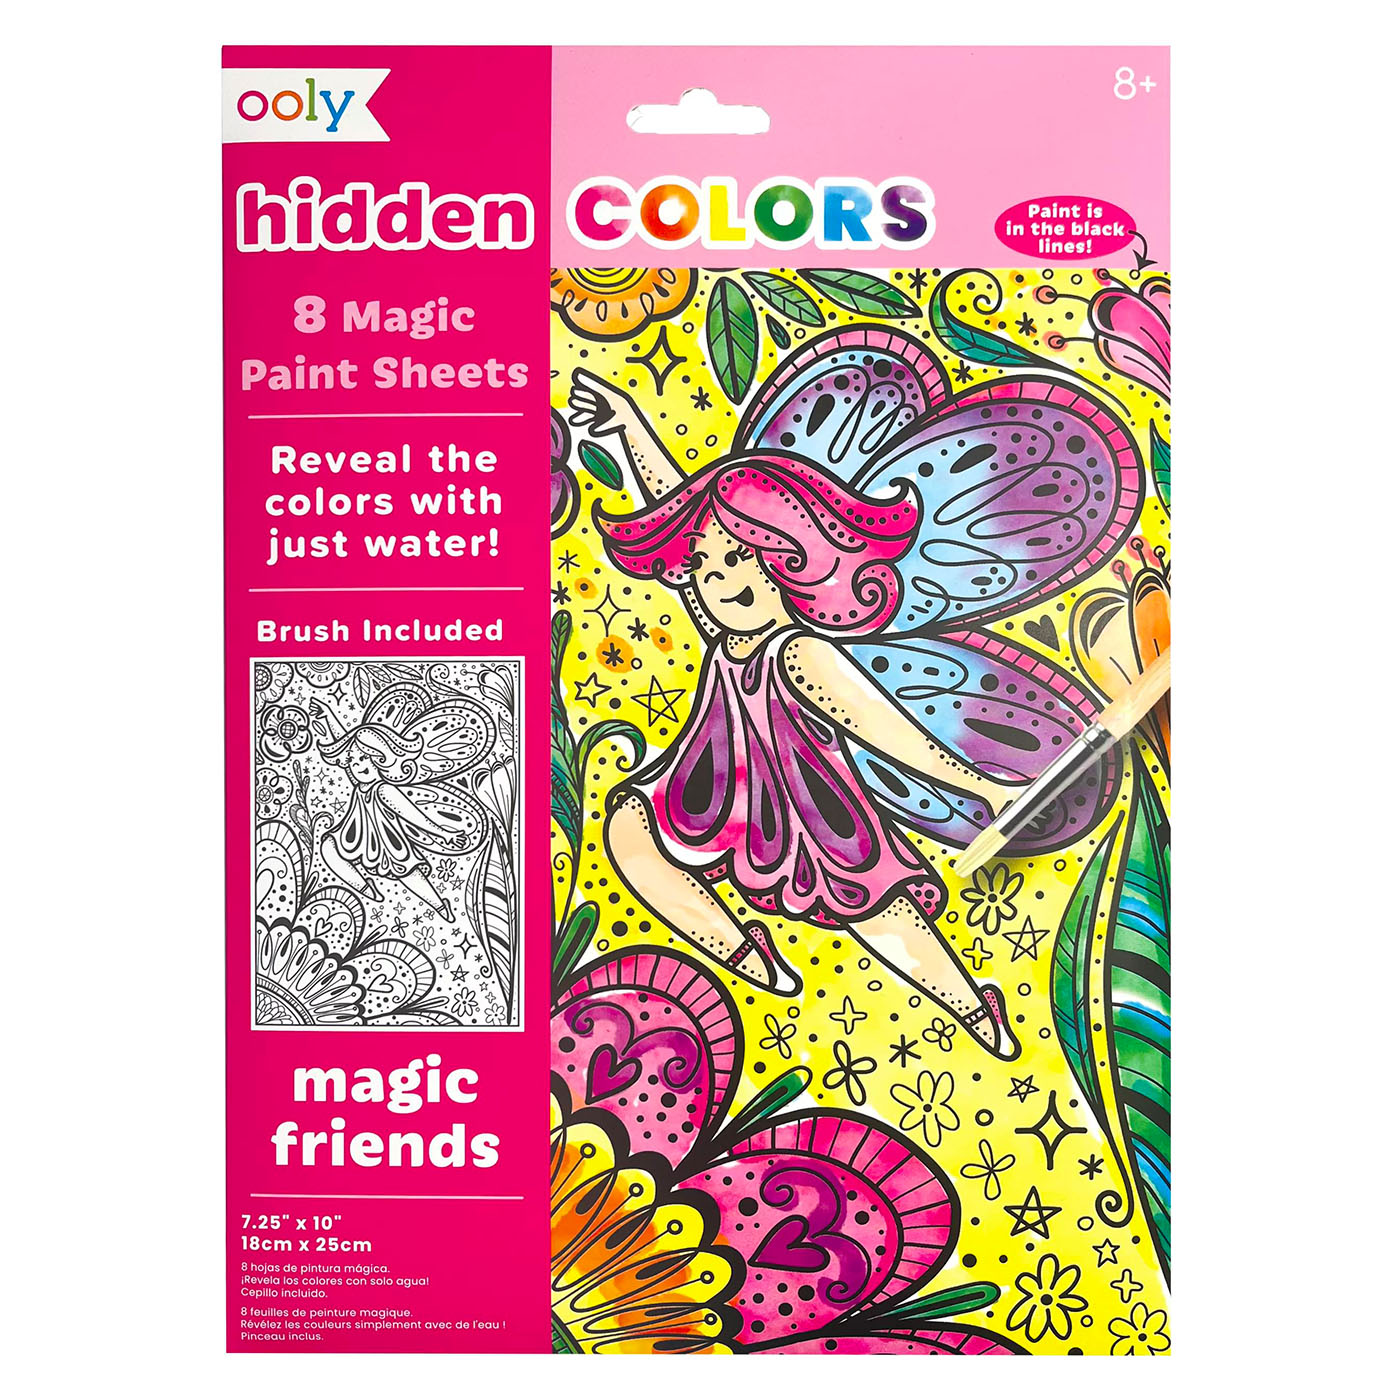  Ooly Hidden Colors Magic Paint Boyama Seti - Magic Friends